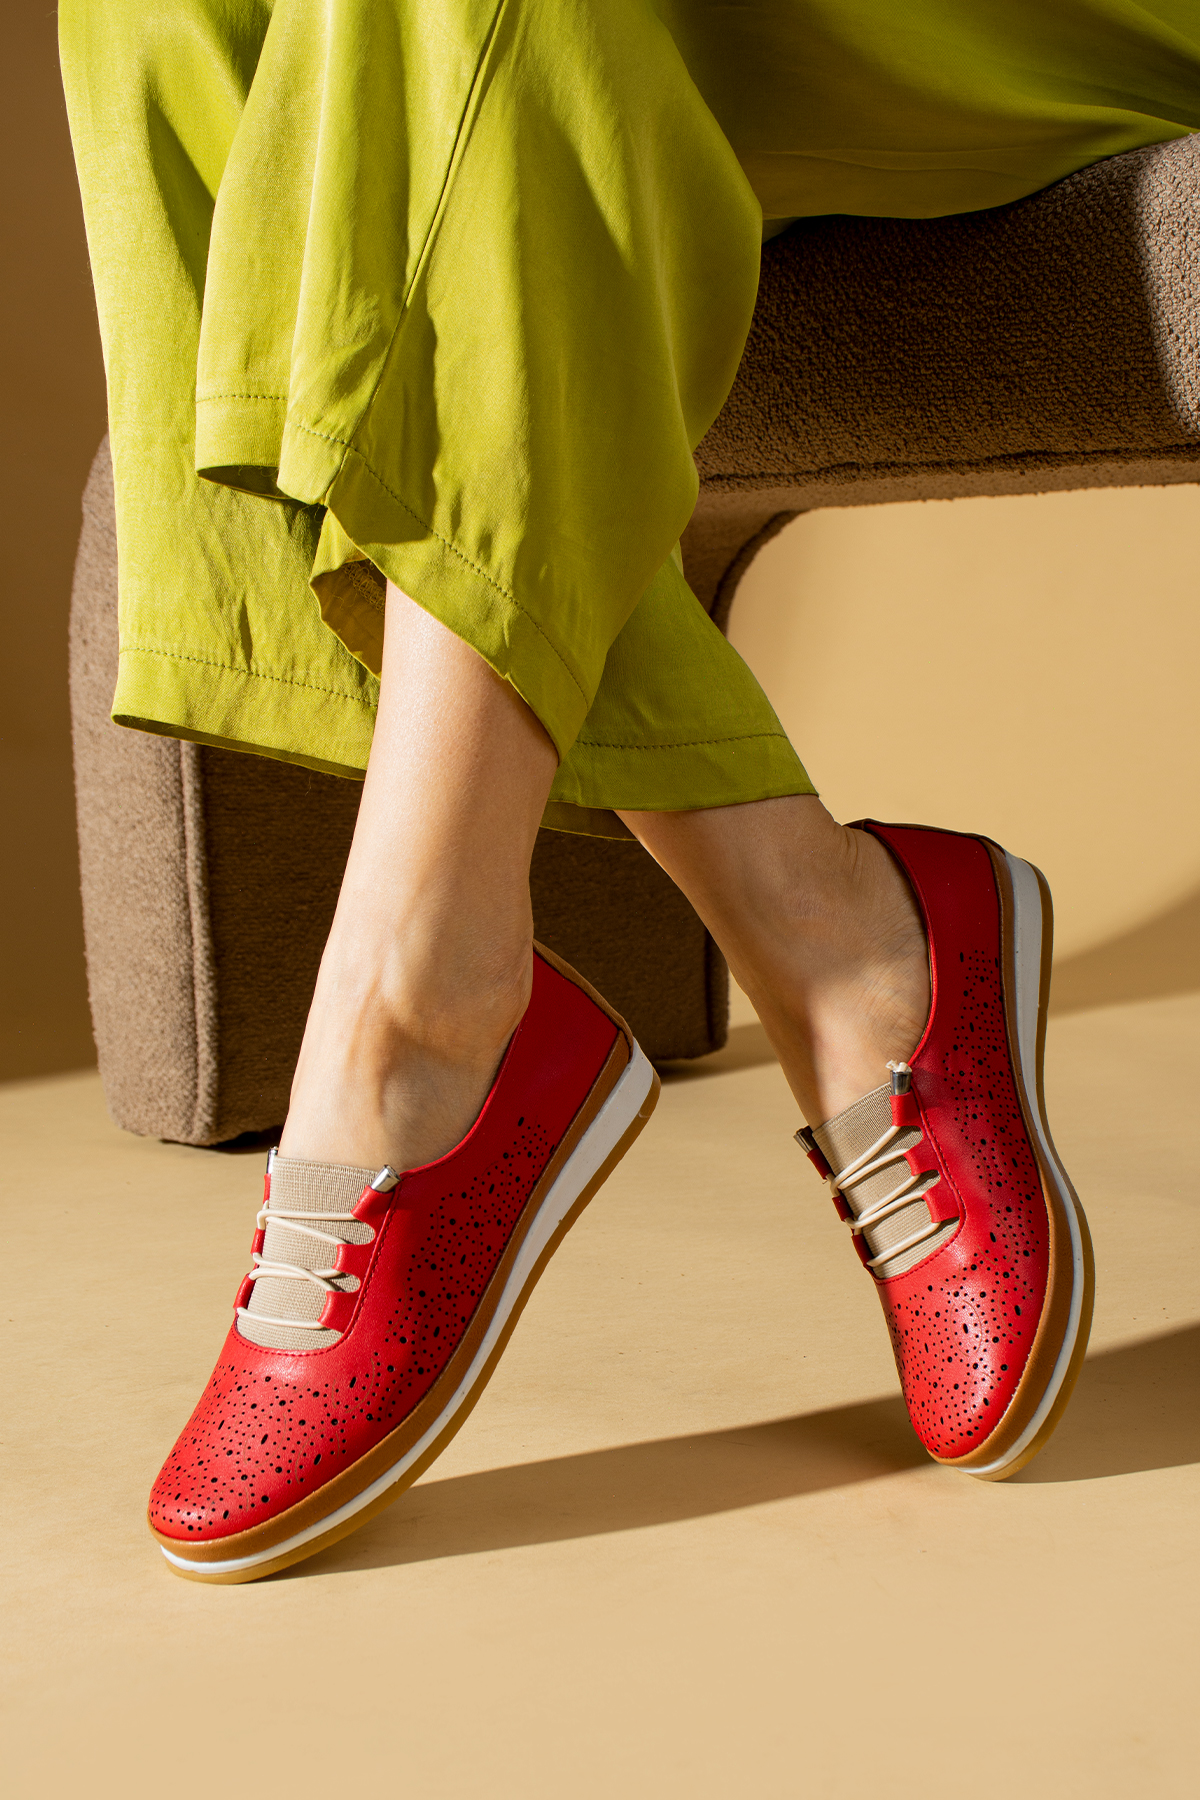 Ortopedik Comfort Taban İç Astar Hakiki Deri Kadın Ayakkabı 43-2576-23 - Kırmızı